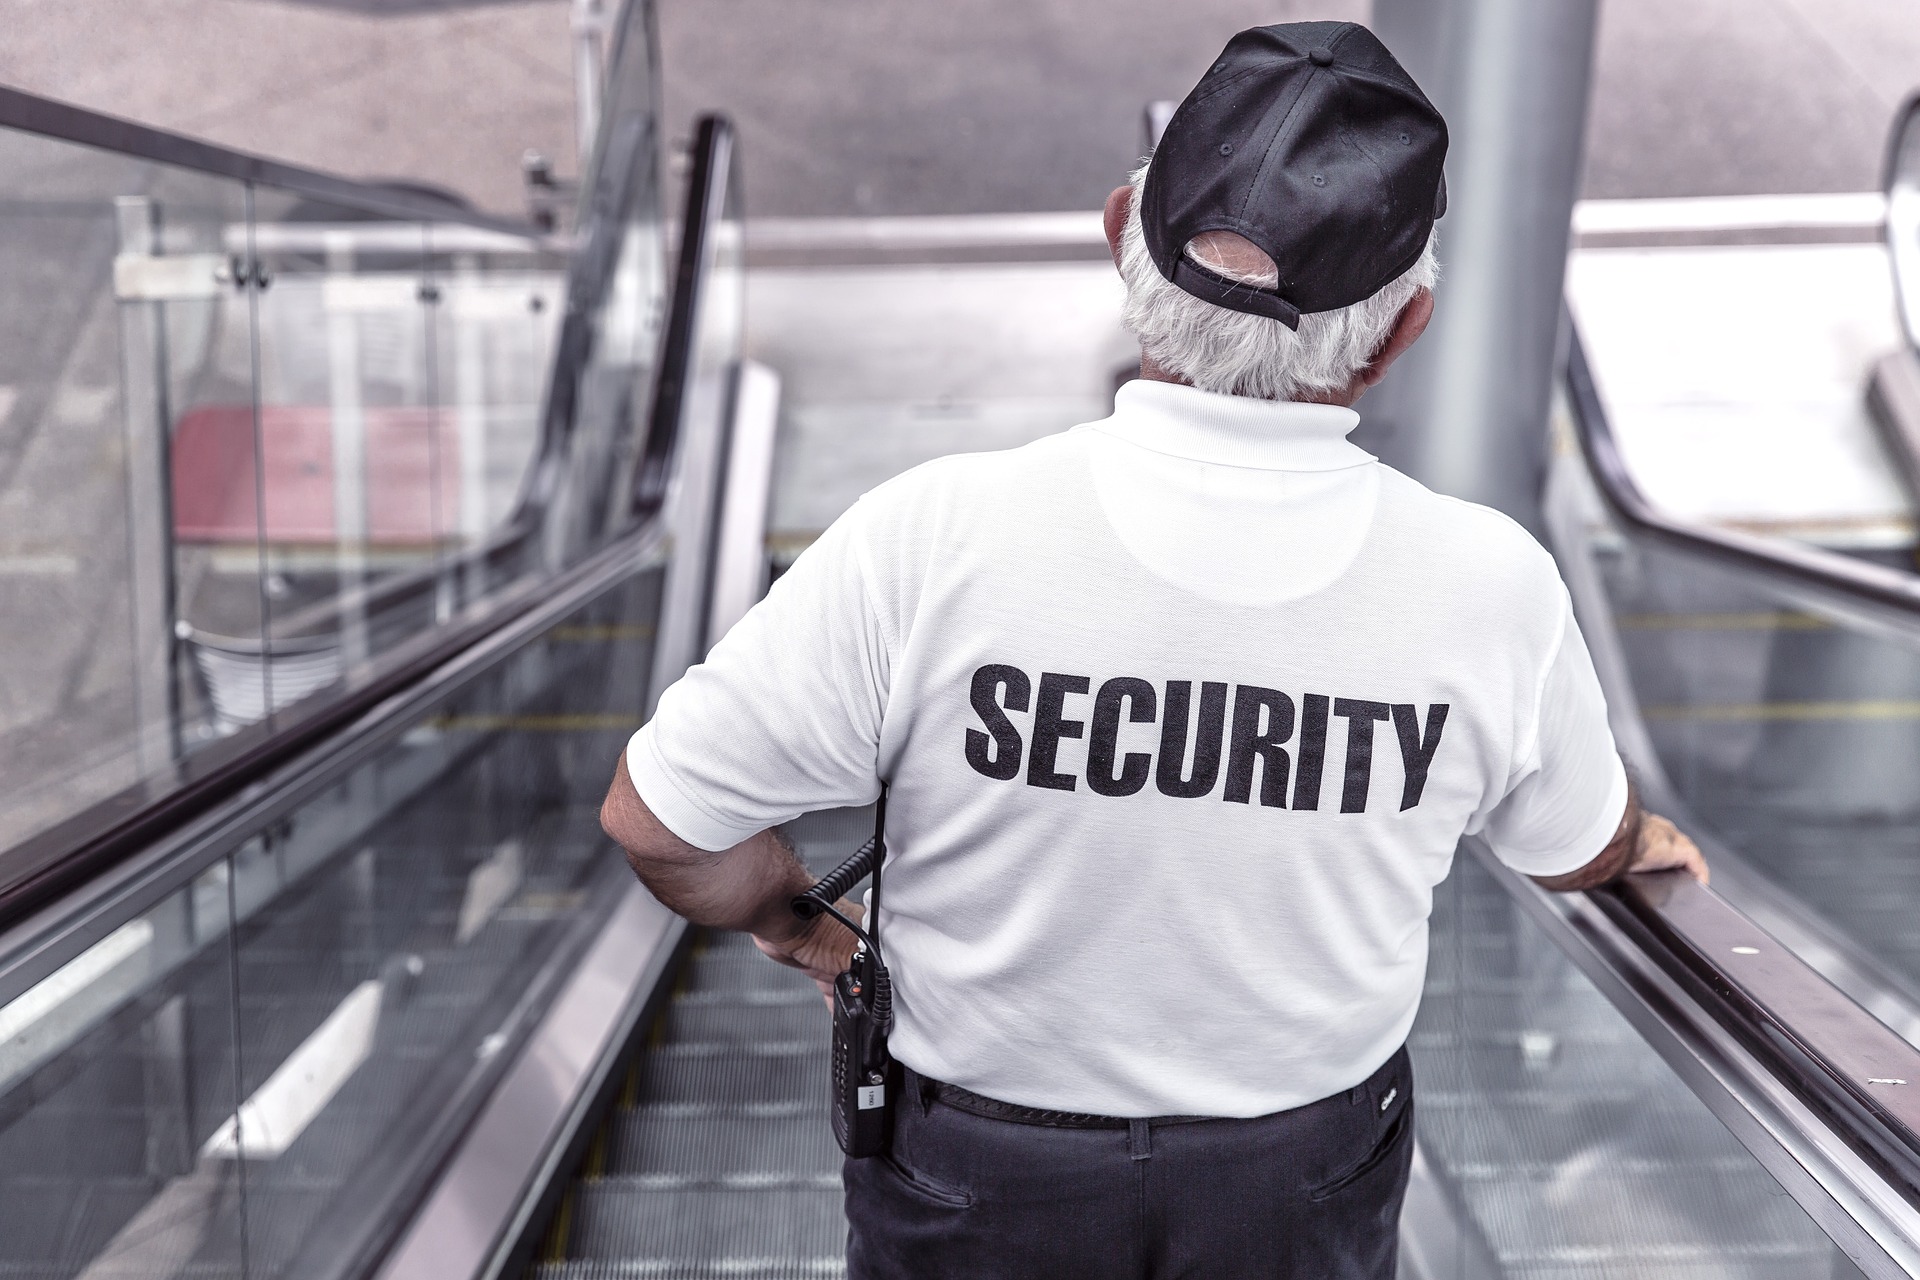 Mann auf Rolltreppe mit Rücken zur Kamera. Weißes Shirt auf dem Security steht. Blog Paragraph 13